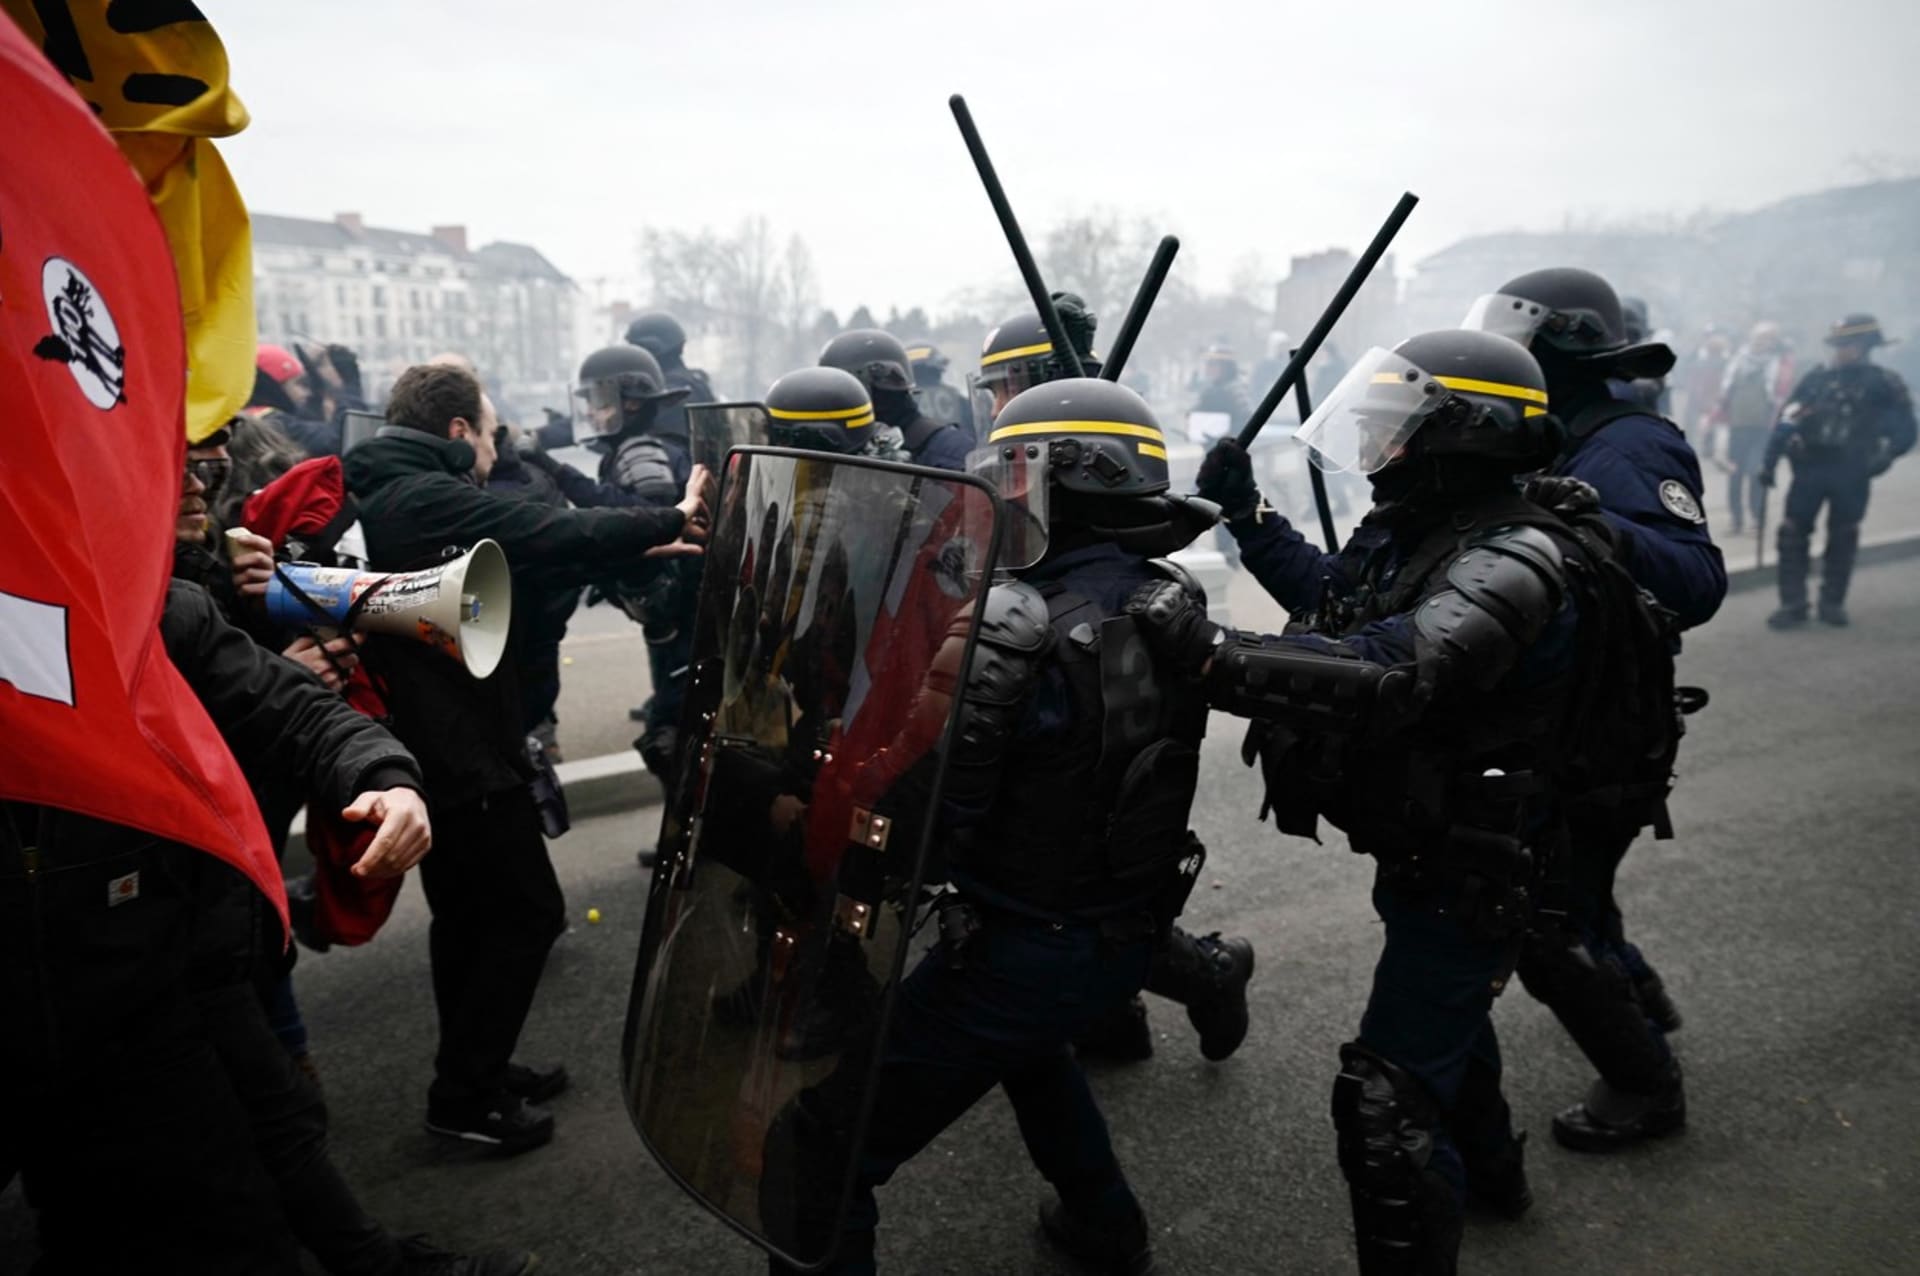 Ve Francii proti důchodové reformě demonstrovalo přes milion lidí.